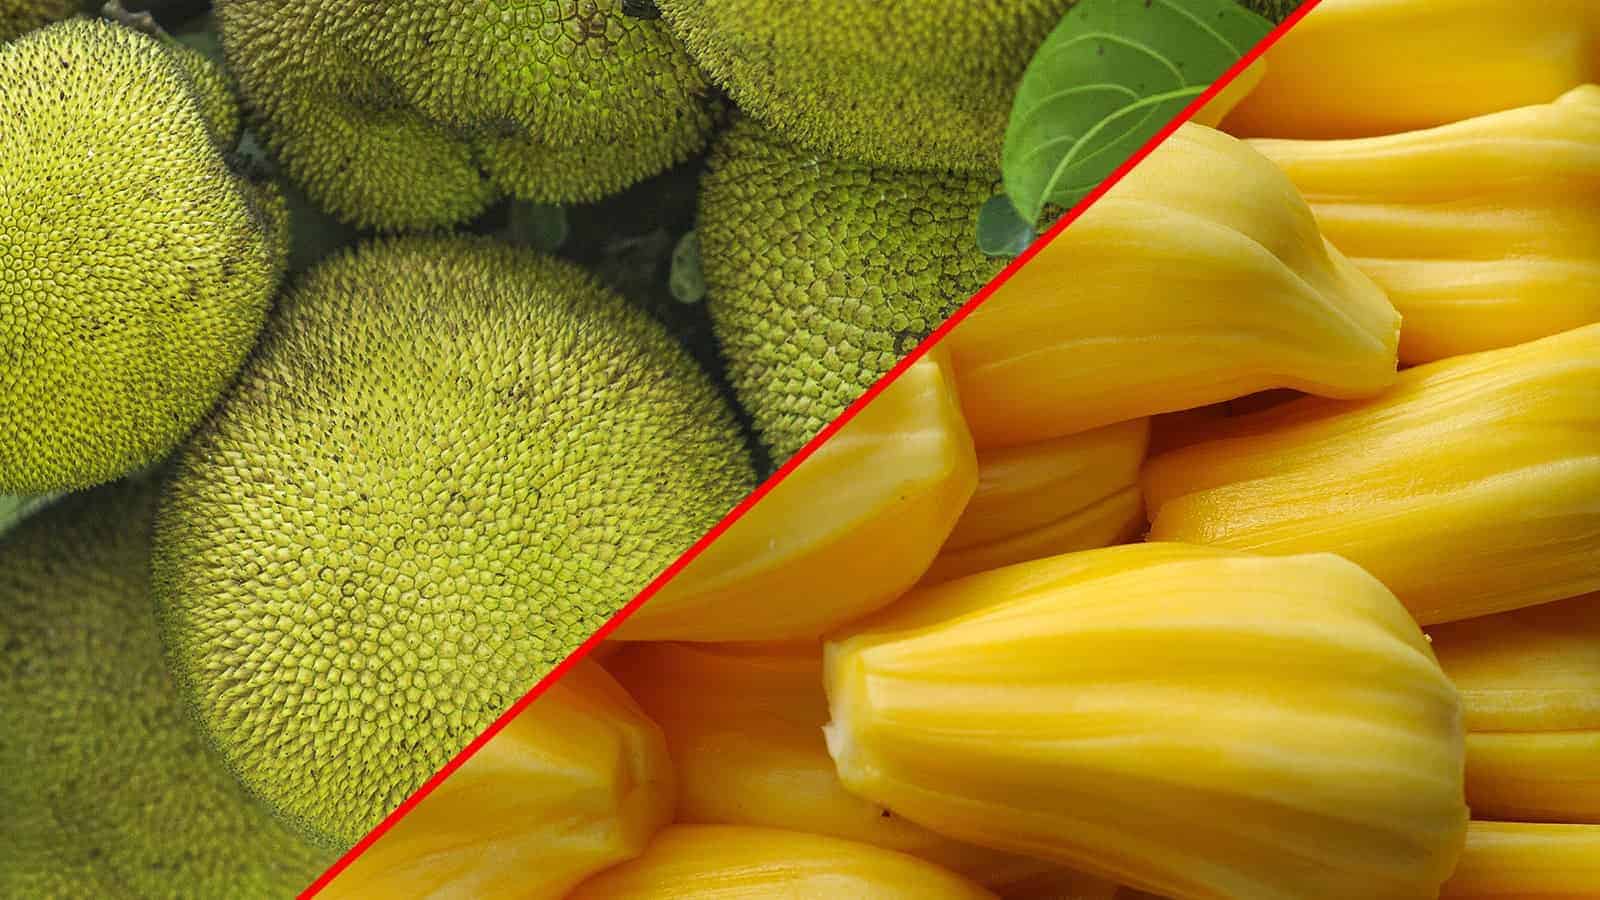 10 Health Benefits of Jackfruit